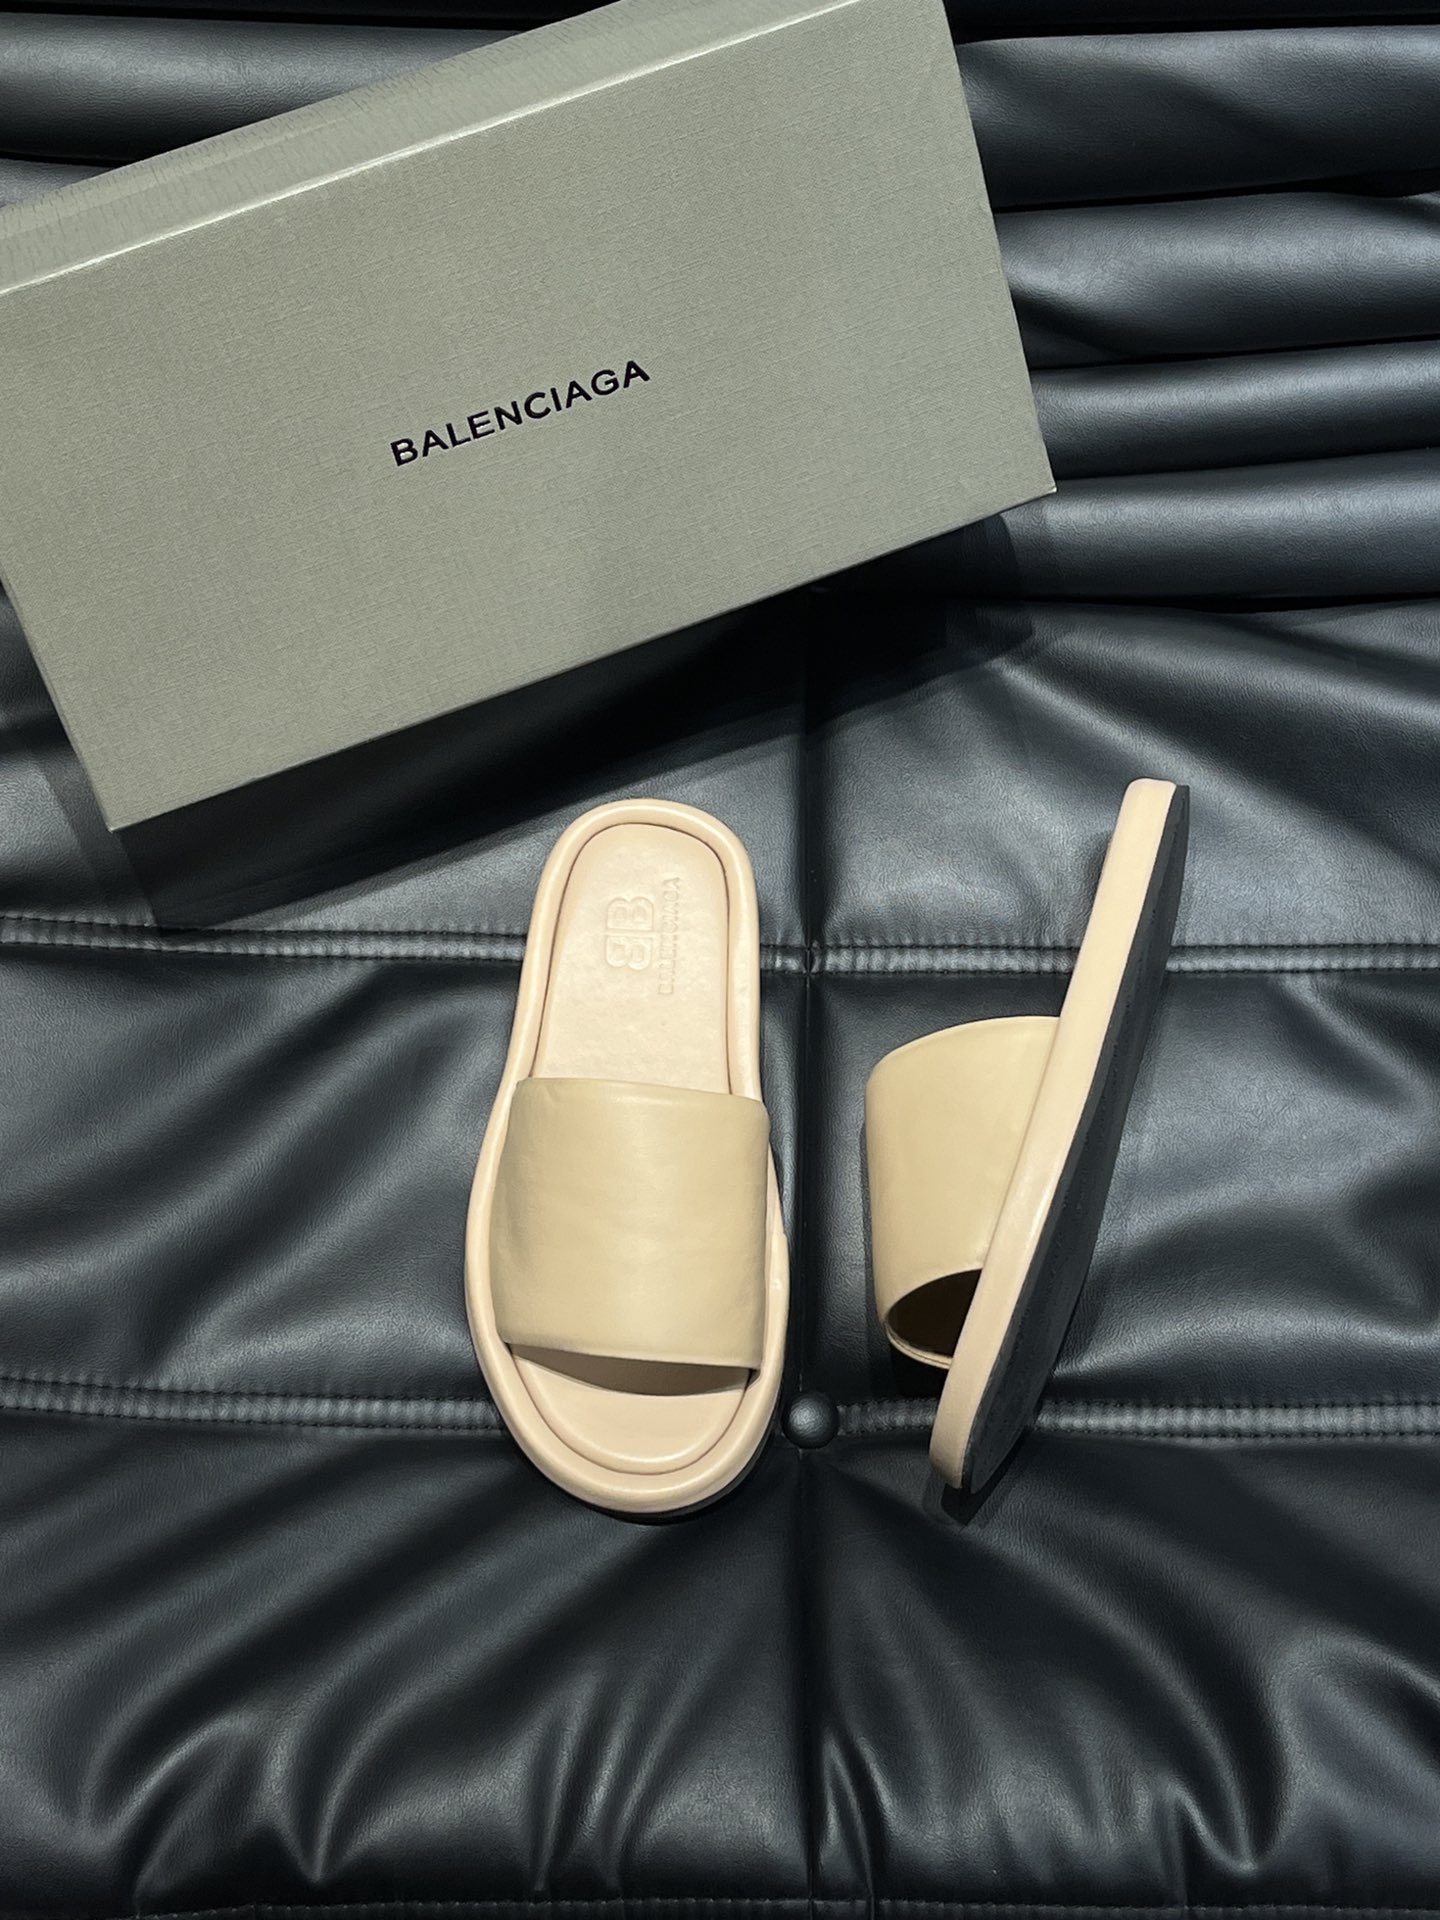 Balenciaga巴黎世家新款情侣厚底拖鞋一如既往的时尚顶级版本鞋面粒纹牛皮特别的柔软亲肤脚感特别舒服